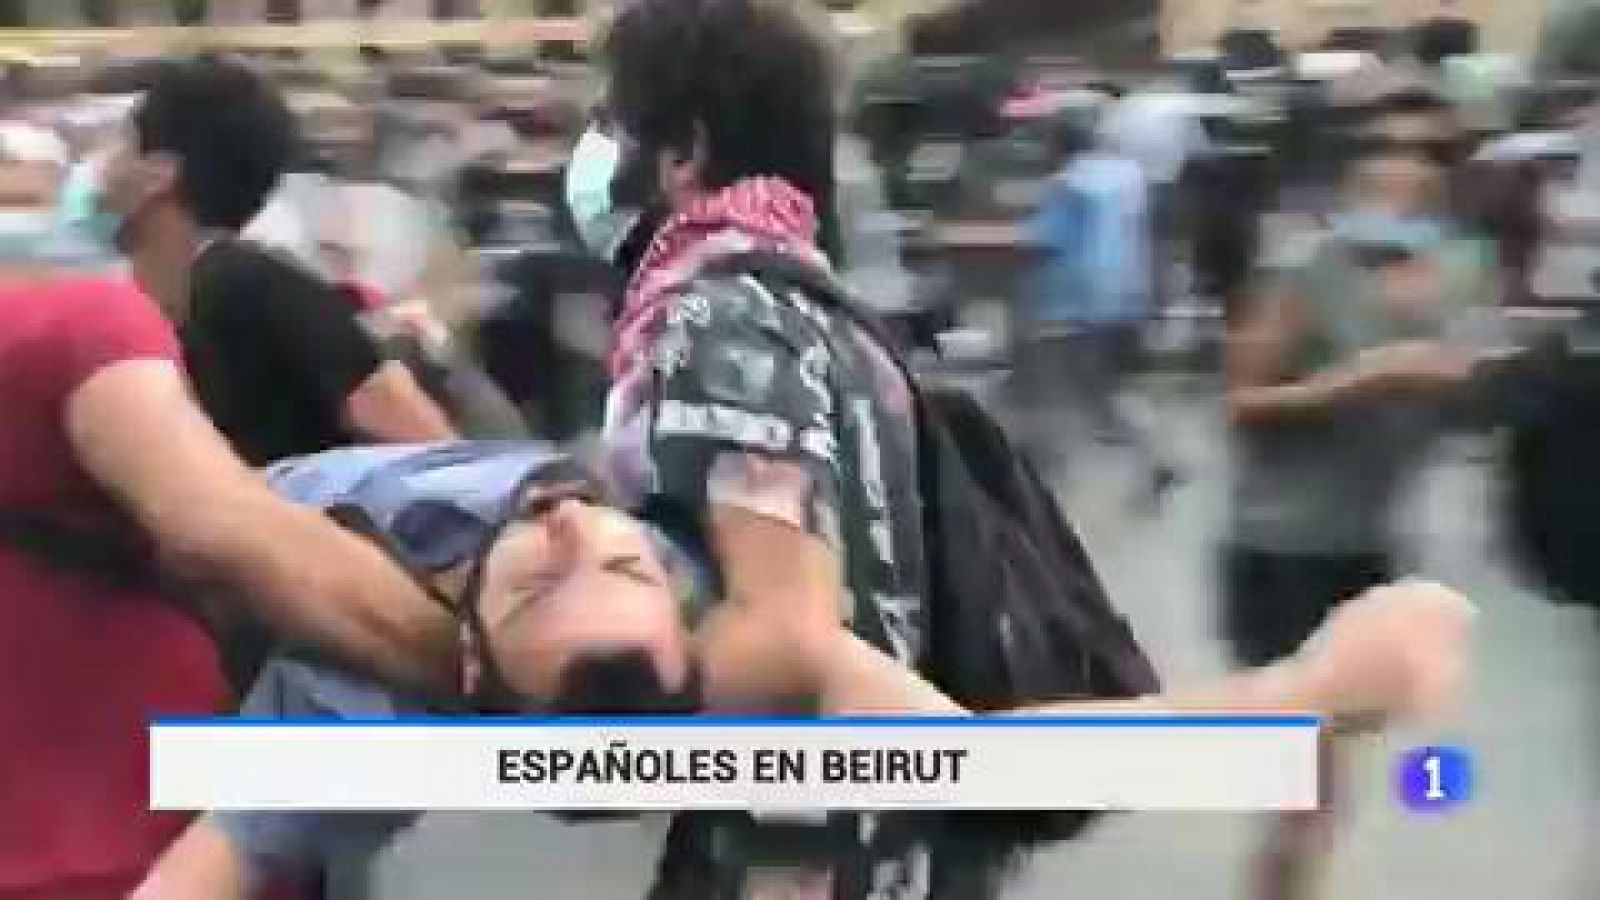 Líbano | Un español relata las protestas en Beirut: "La revolución del año pasado ha vuelto con más furia"